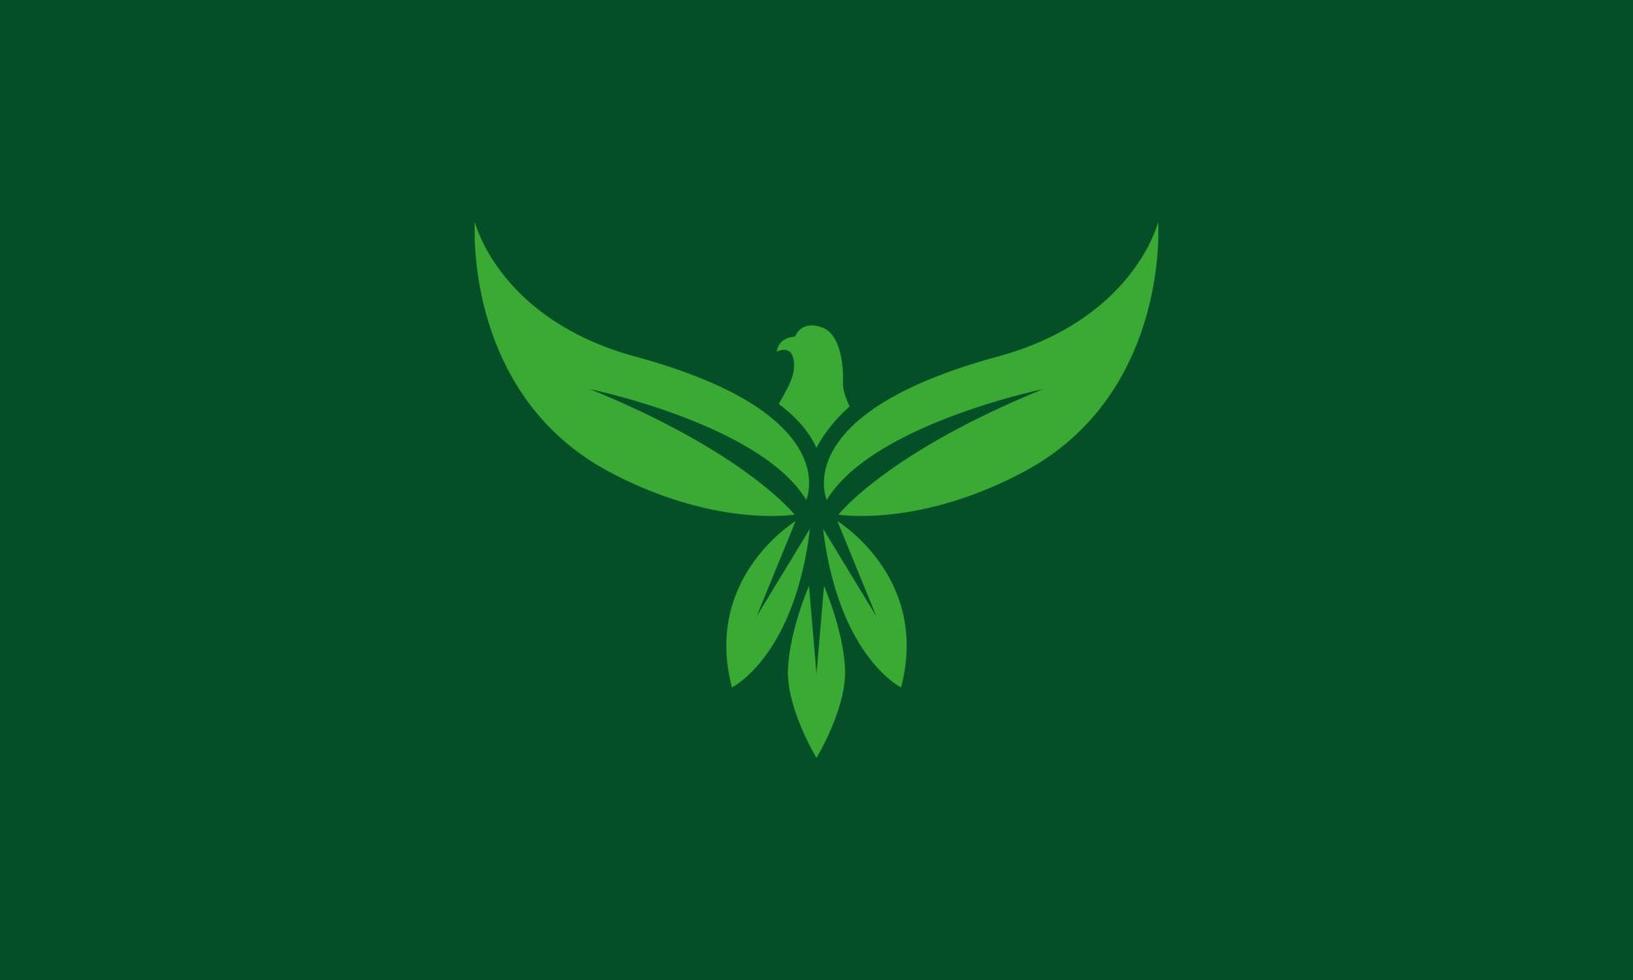 eagle and leaves or leaf logo. pictorial logo design . vector illustration eps10